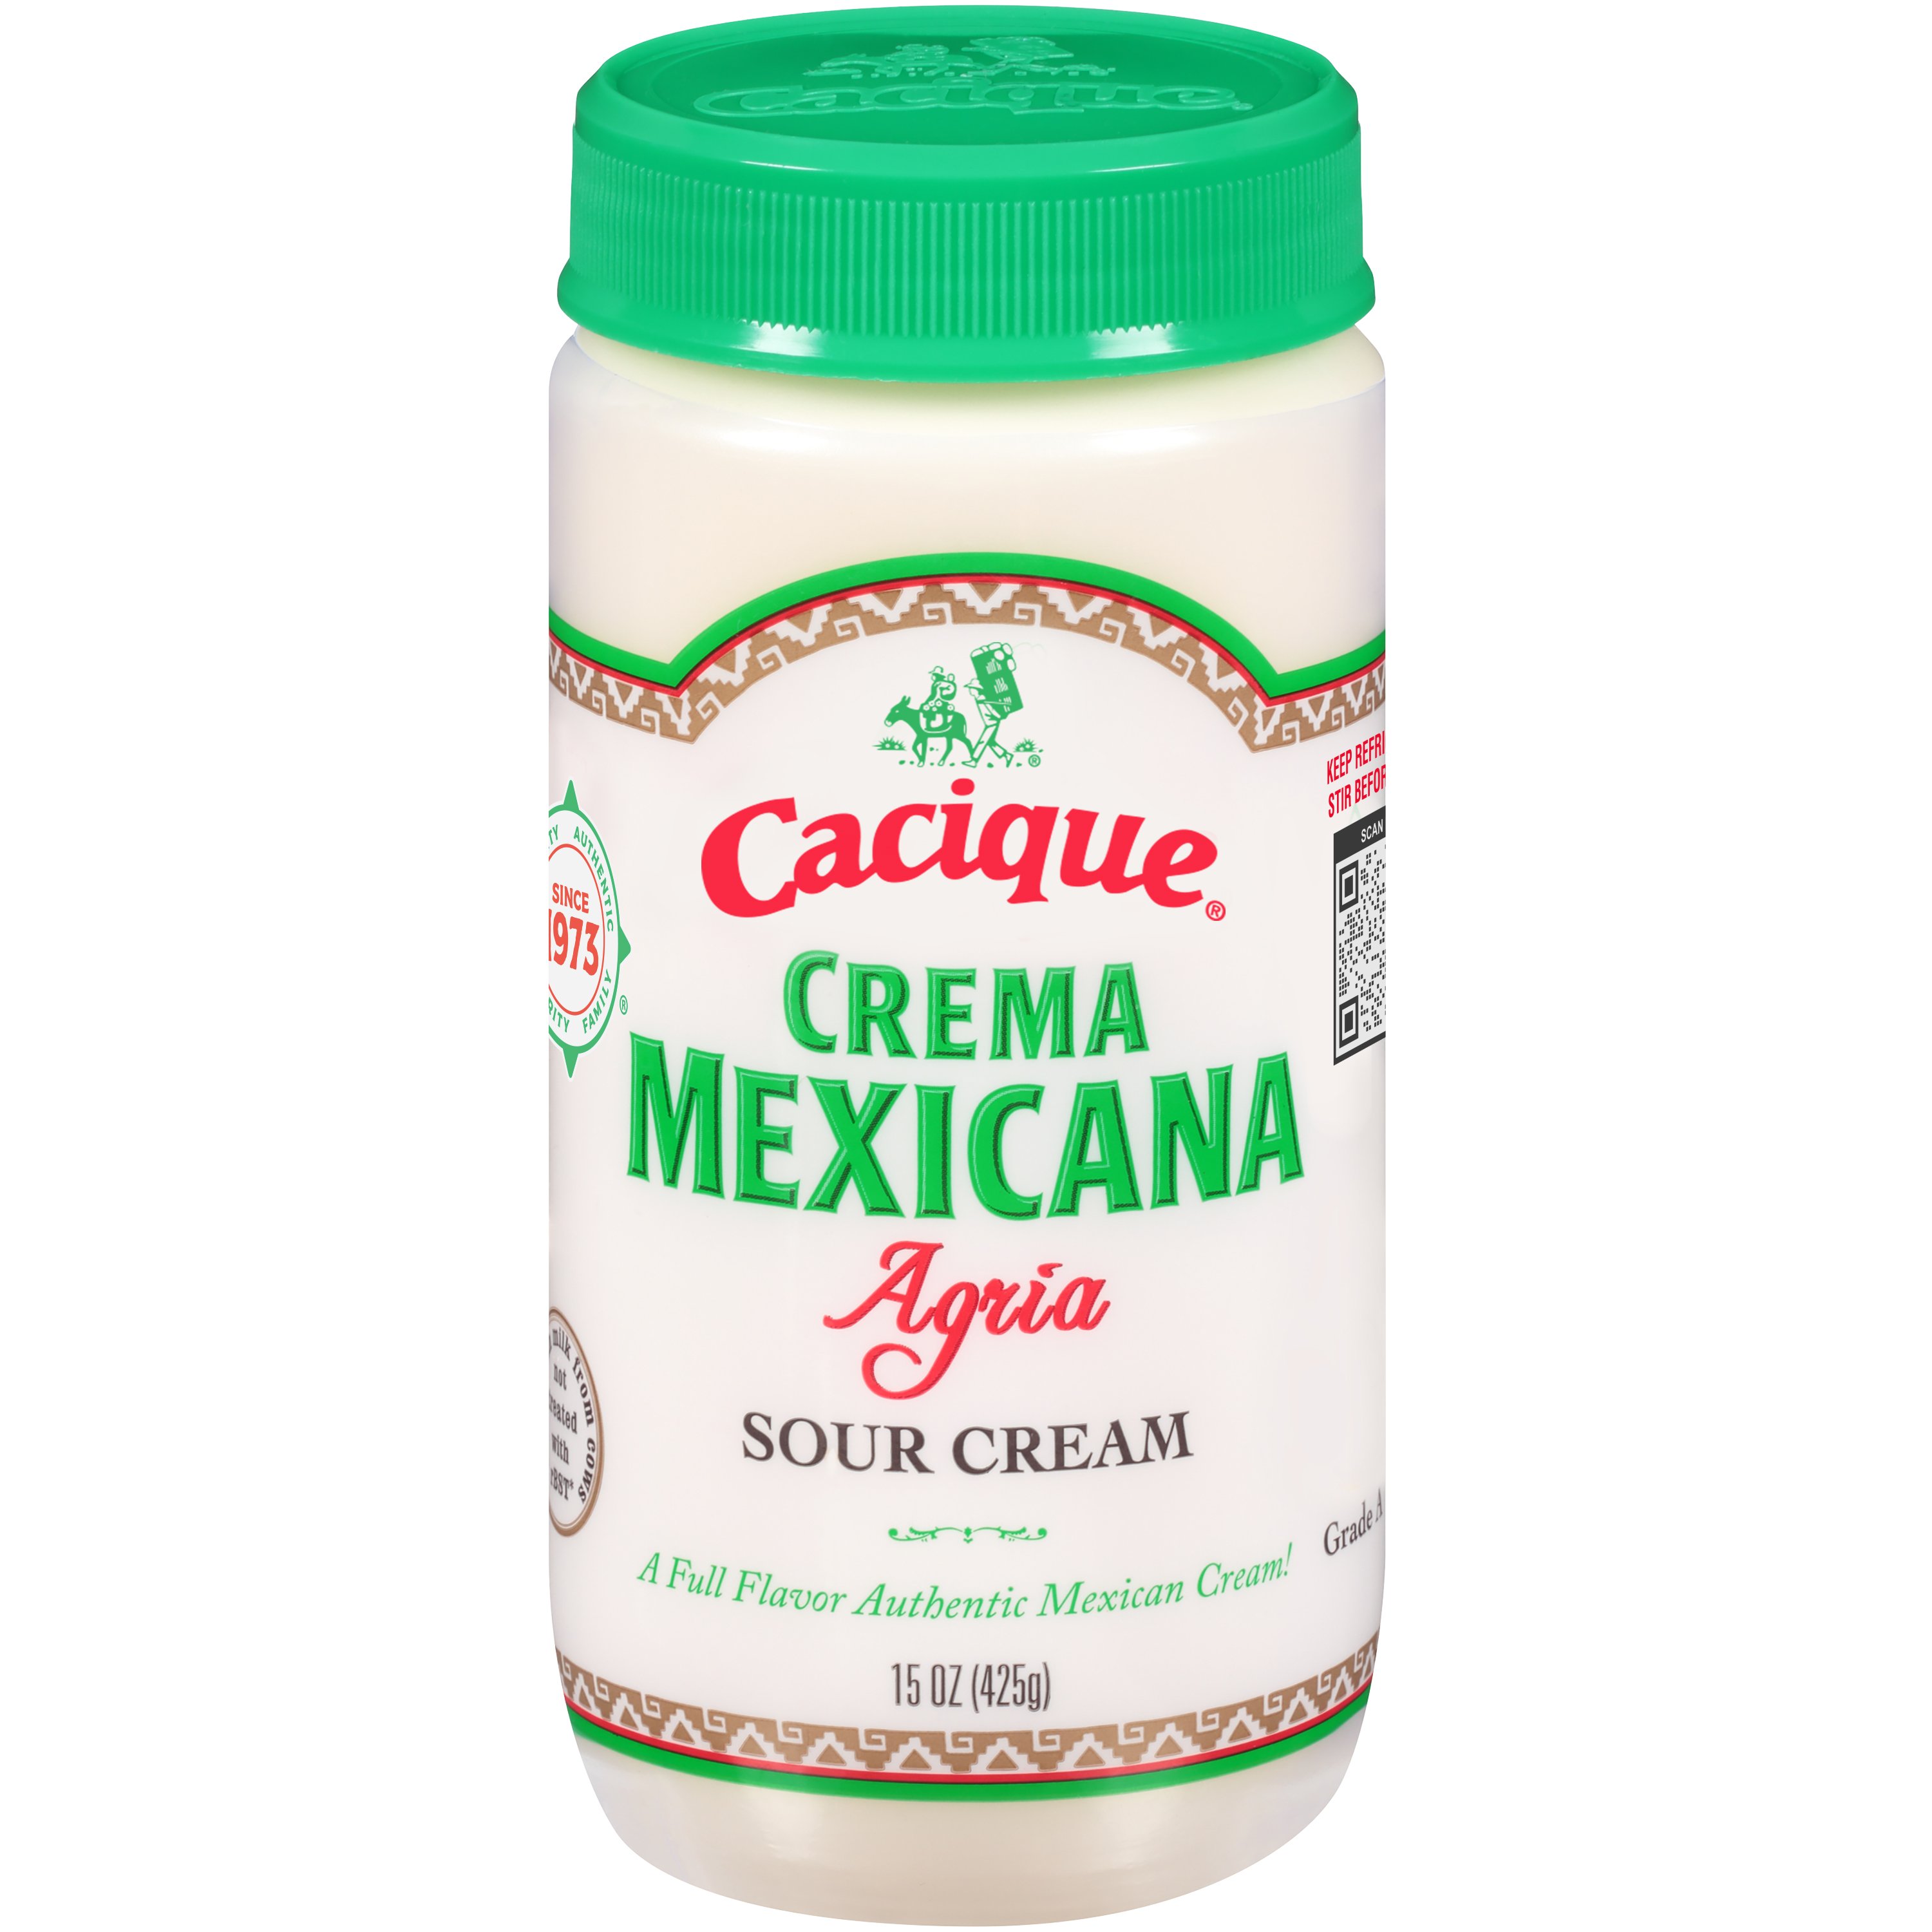 Cacique Crema Mexicana Agria Sour - Cream Cream Sour at Shop H-E-B